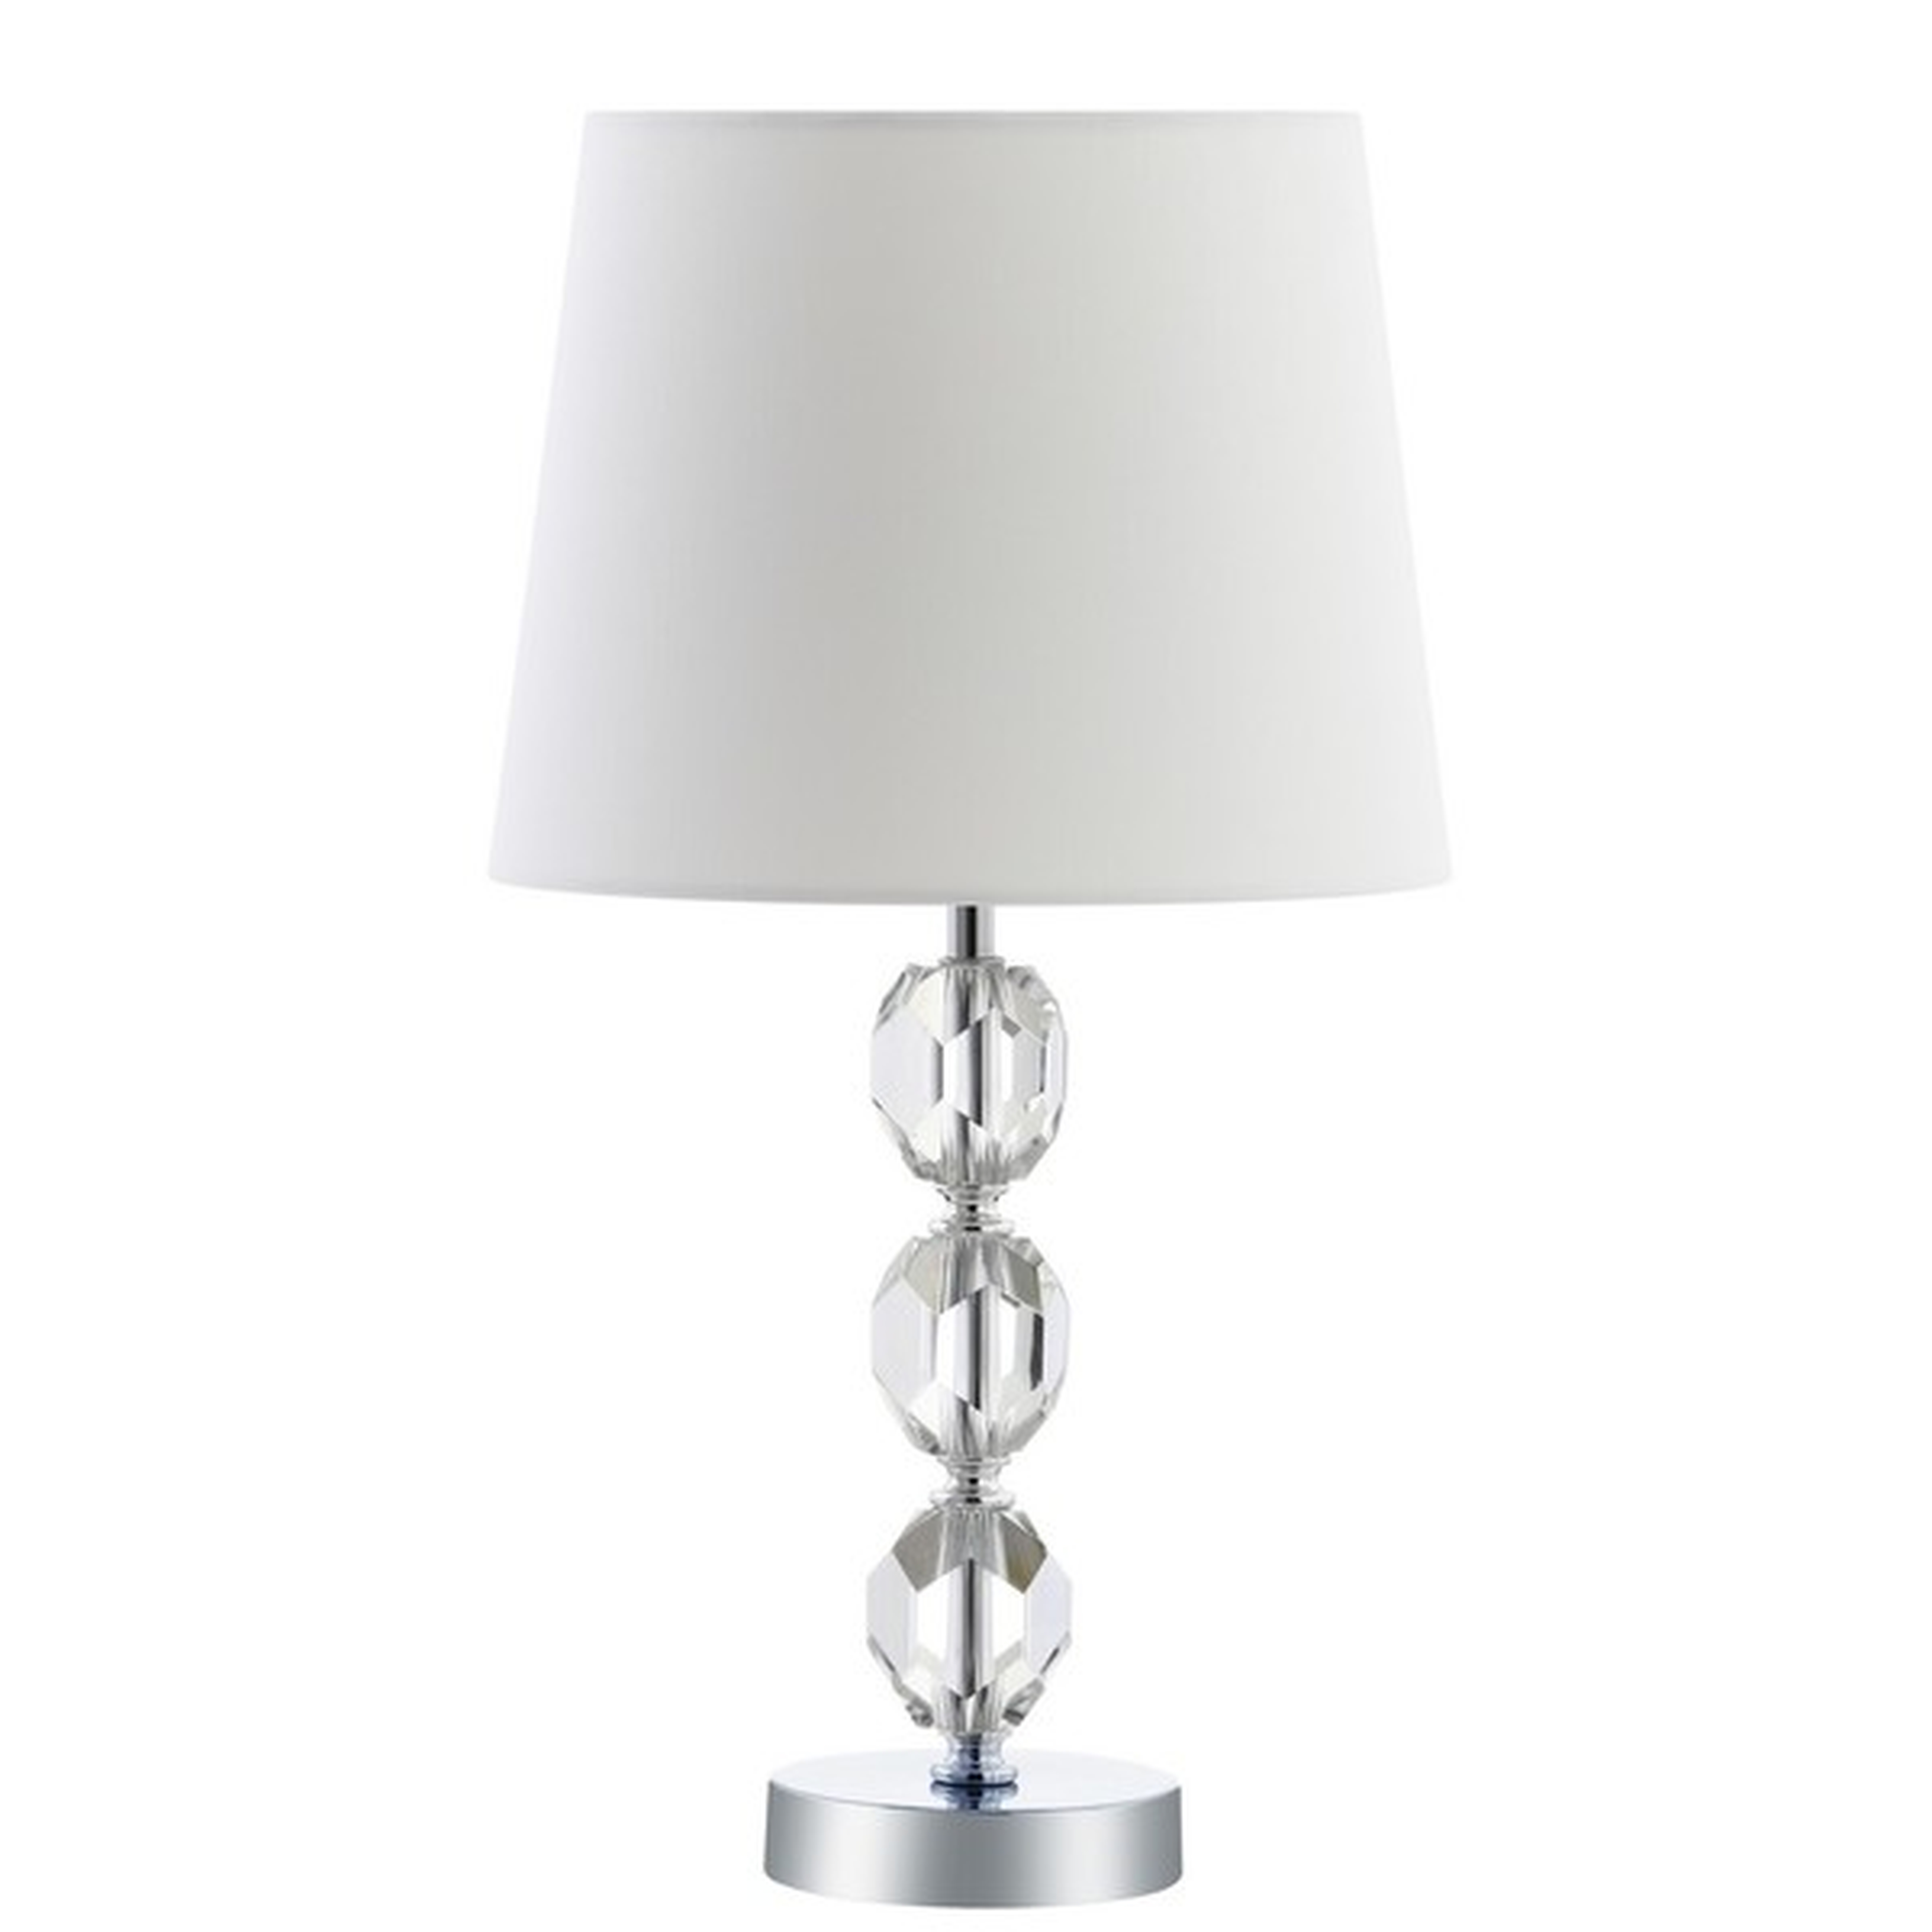 Brockton Table Lamp - Clear/Chrome - Safavieh - Arlo Home